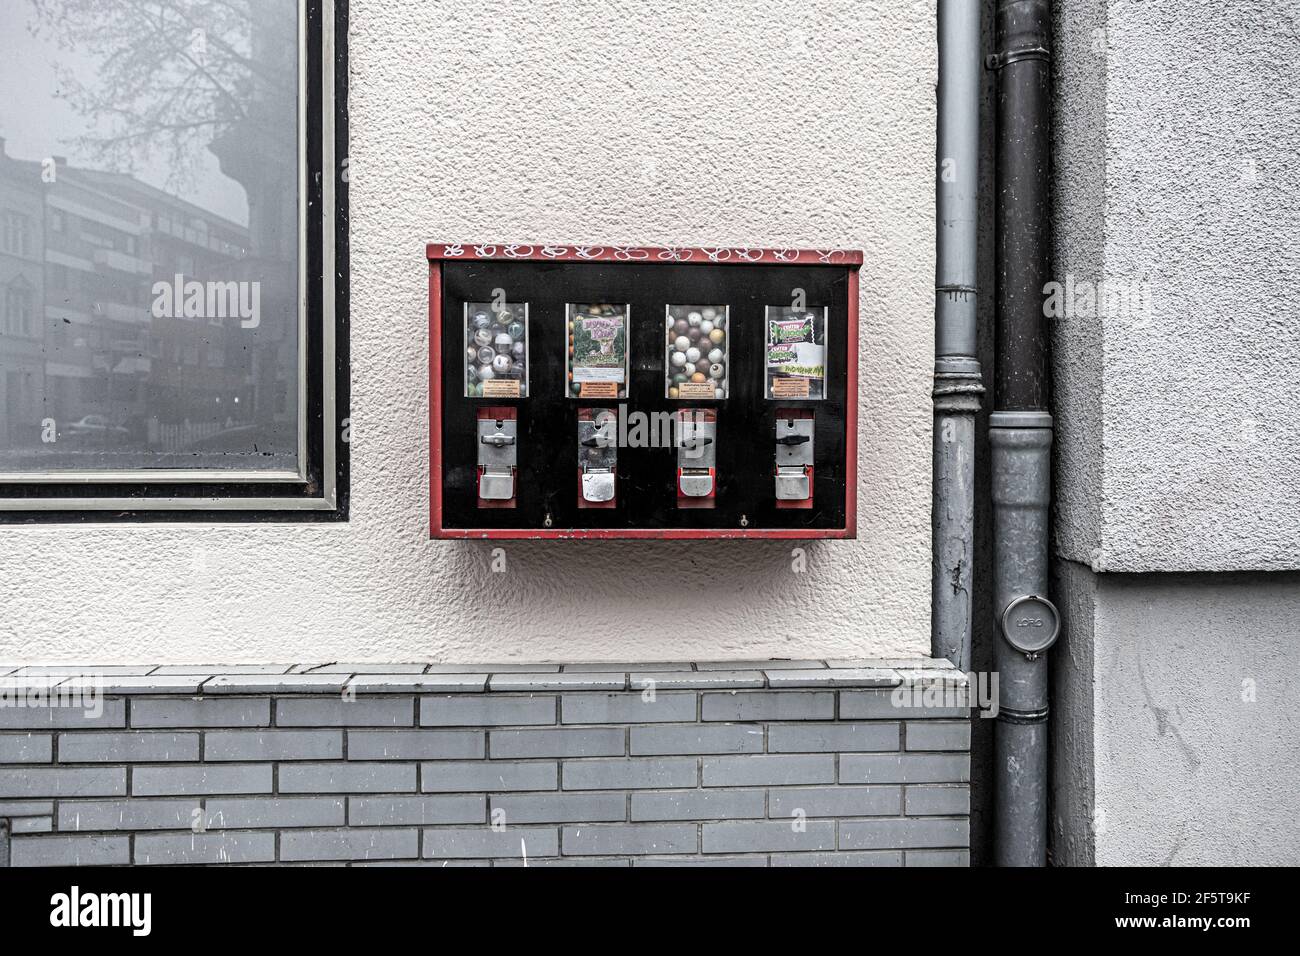 Bonn, NRW, Deutschland, 03 23 2021, Gummiballmaschine an einer Wand befestigt, Abwasserrohr und Reflexionen im Fenster Stockfoto